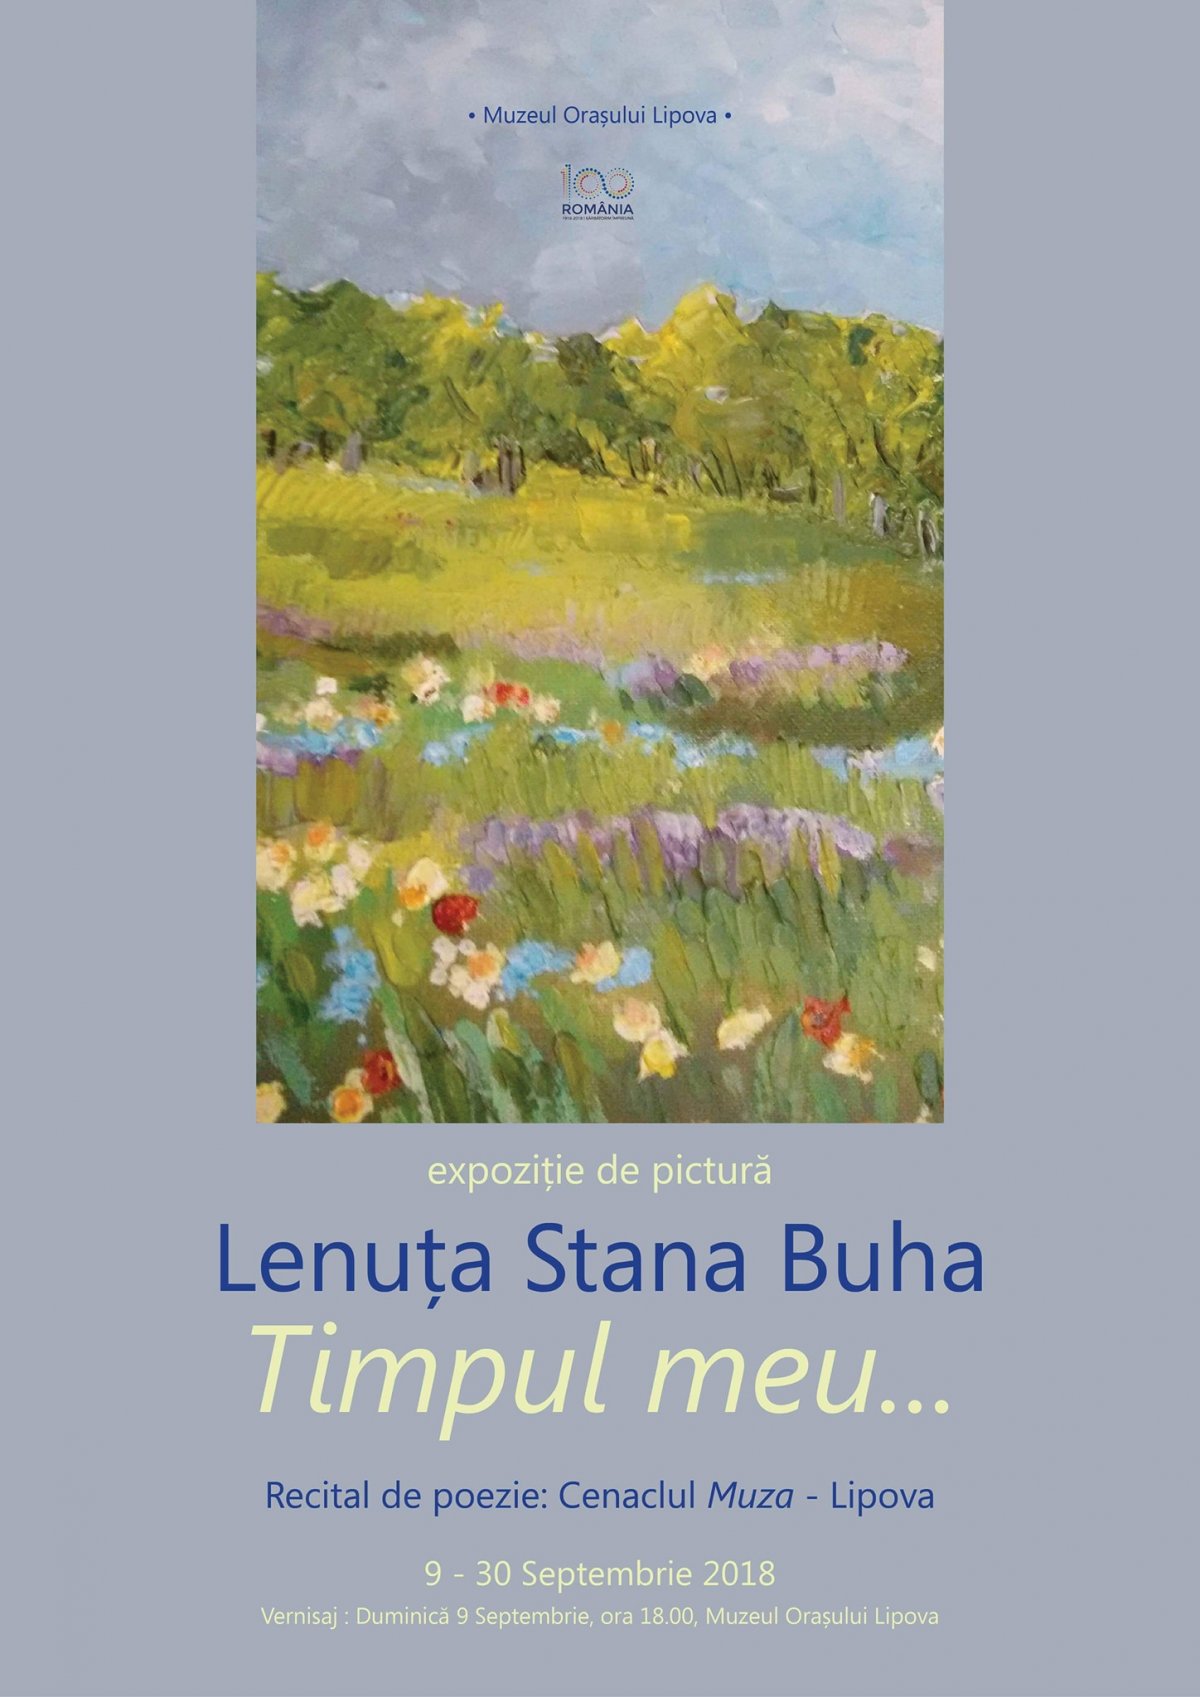  Vernisajul expoziției de pictură LENUȚA STANA BUHA la LIPOVA